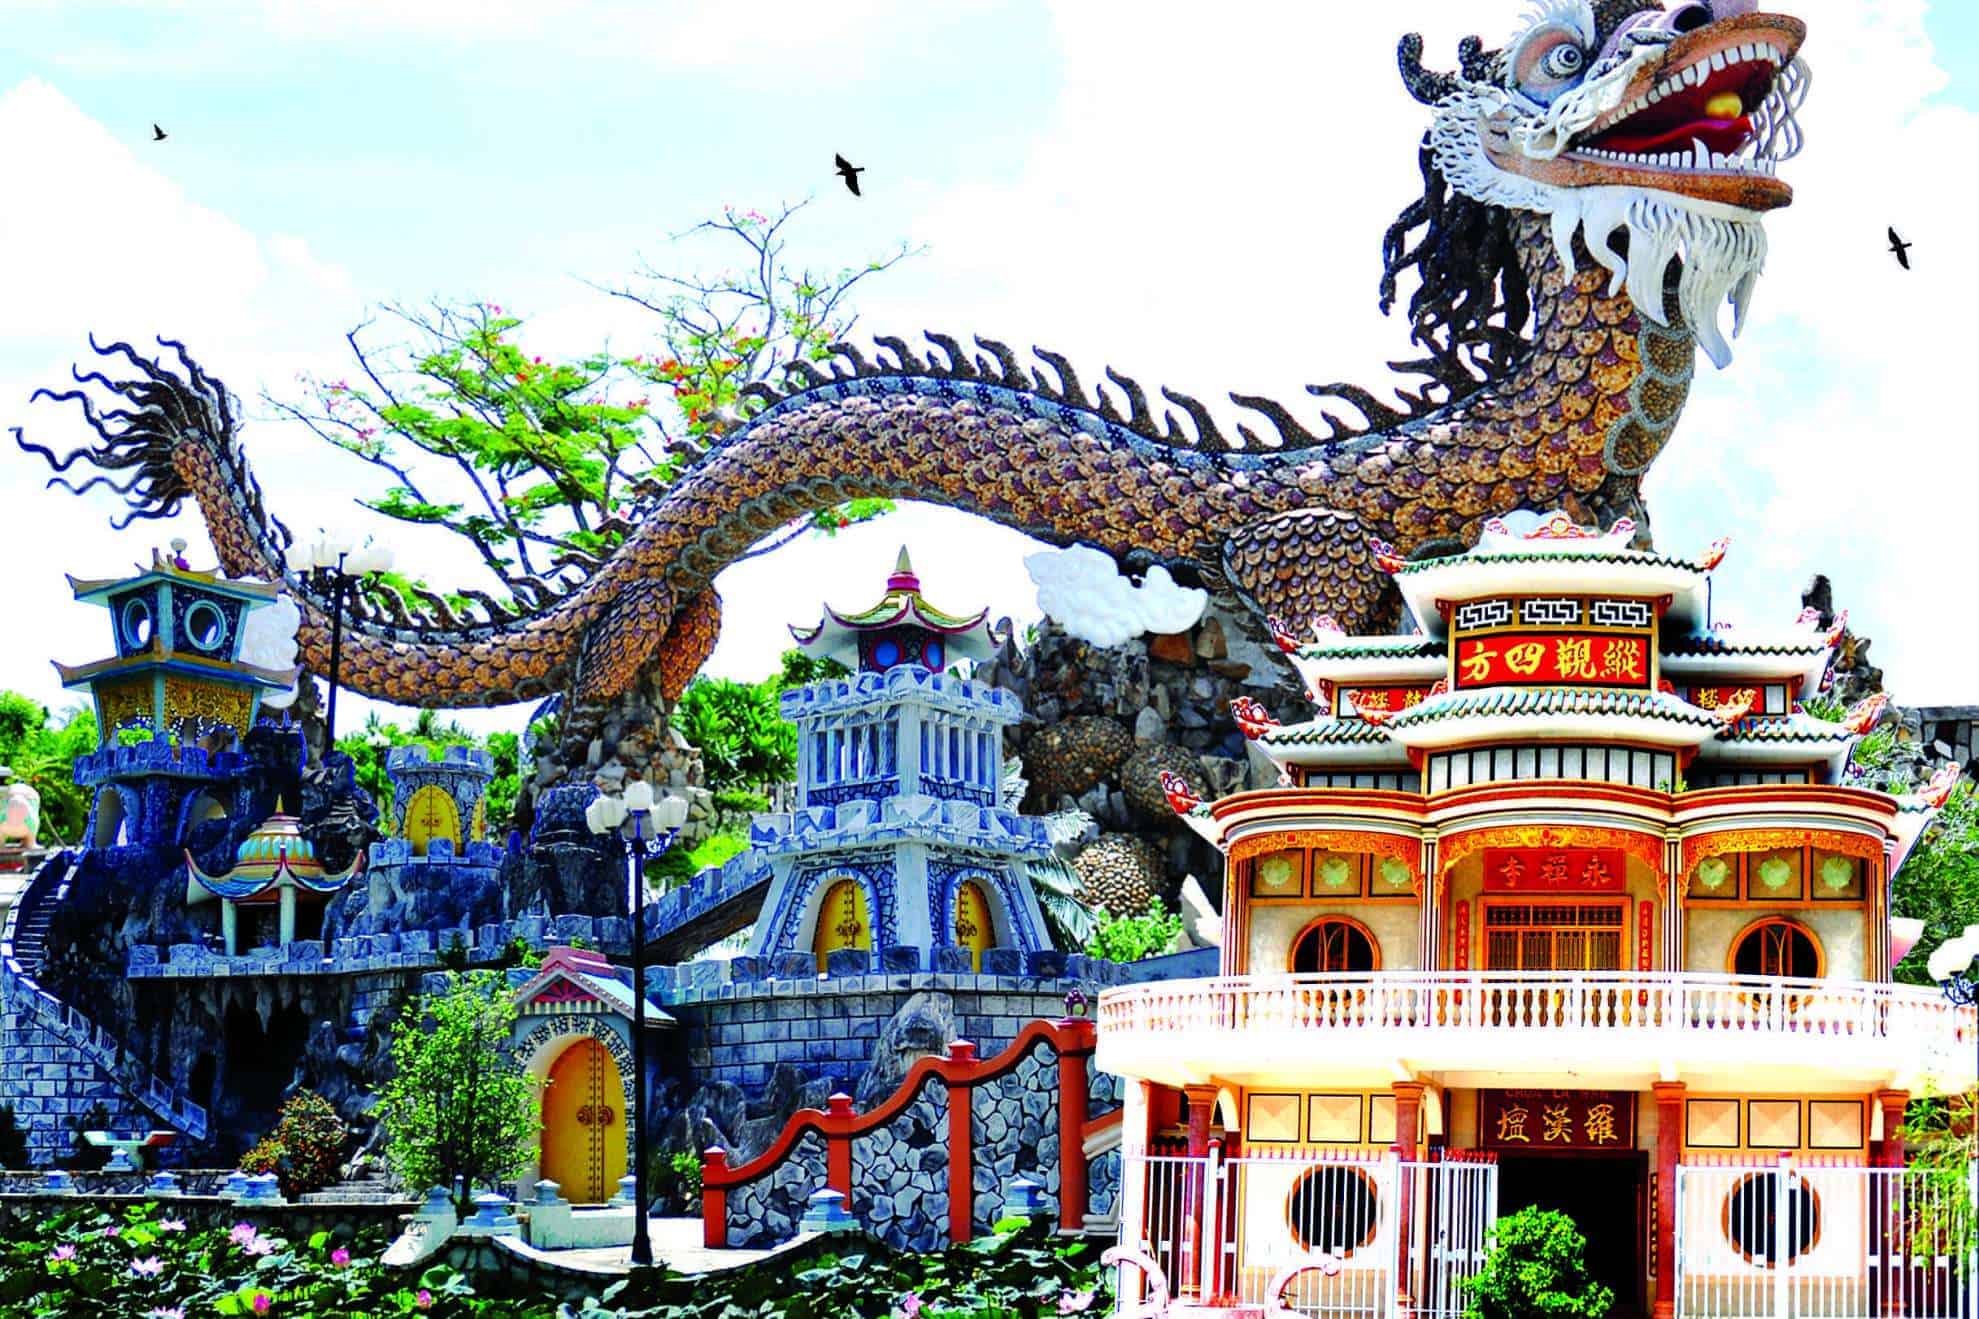 Quang cảnh chùa La Hán mang màu sắc kiến trúc lạ mắt, cuốn hút